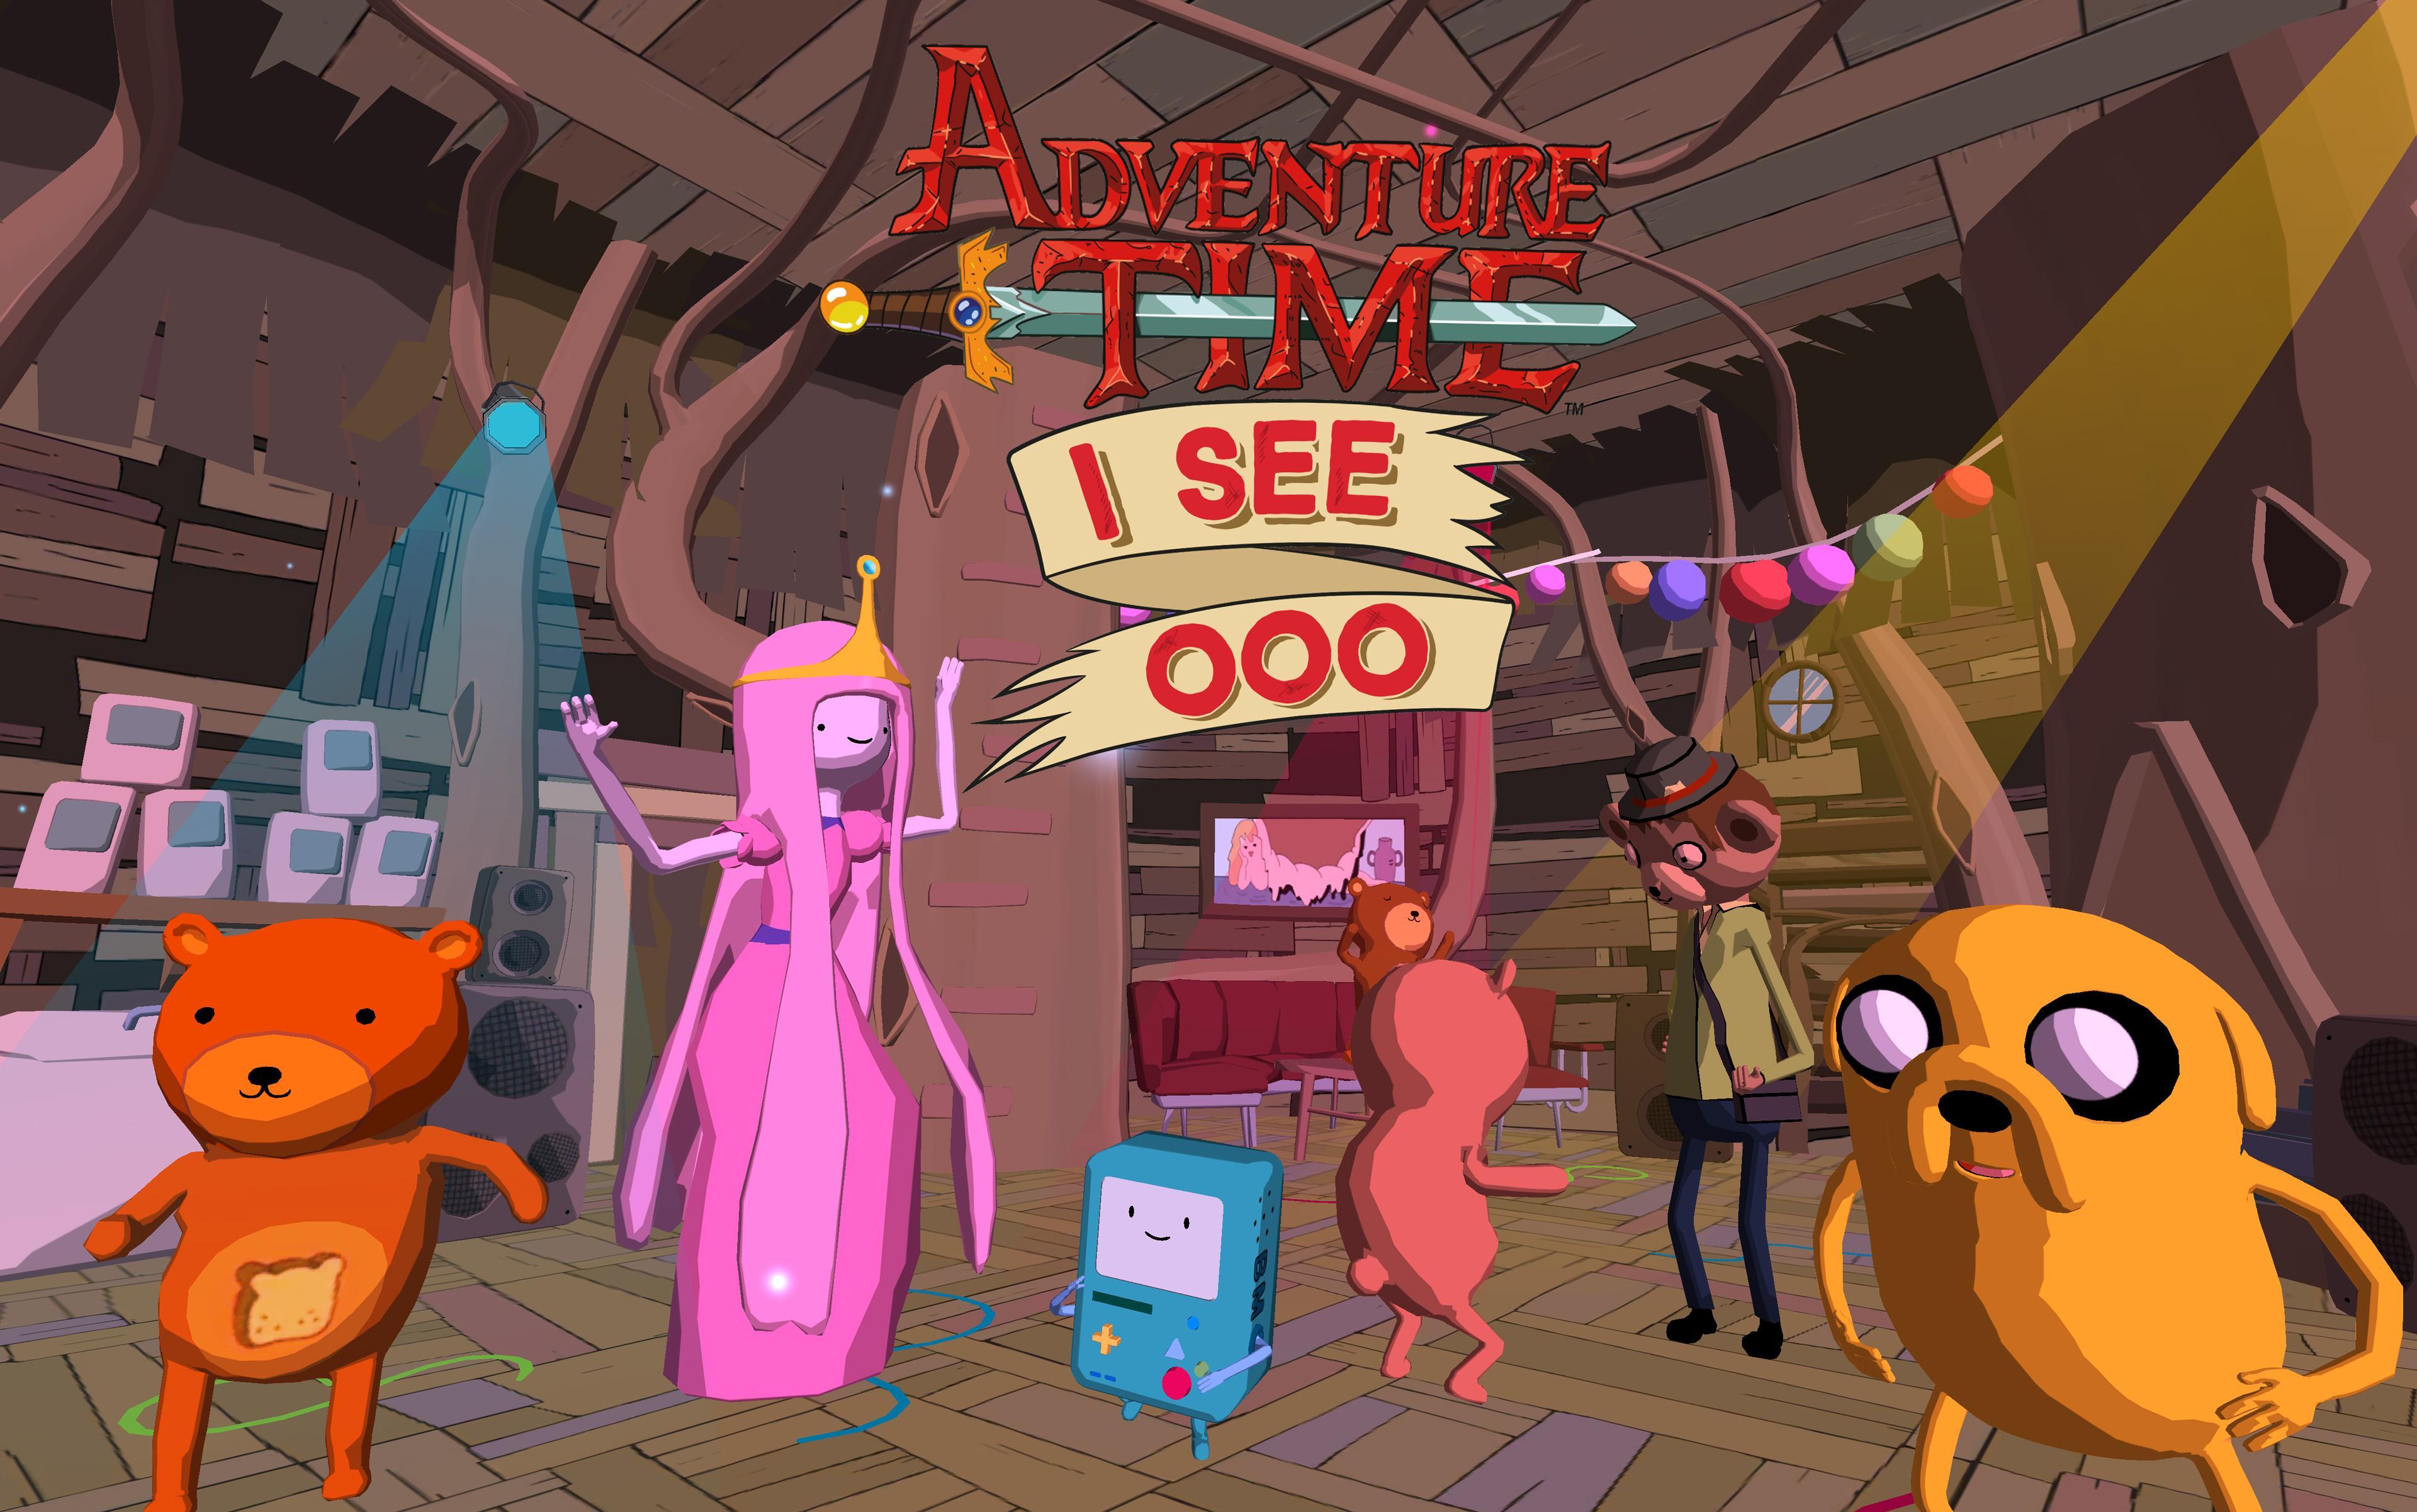 Добавленное на игру время уже. Эдвенчер тайм игра. Игра по времени приключений. Adventure time игра на ПК. Adventure time игра на телефон.